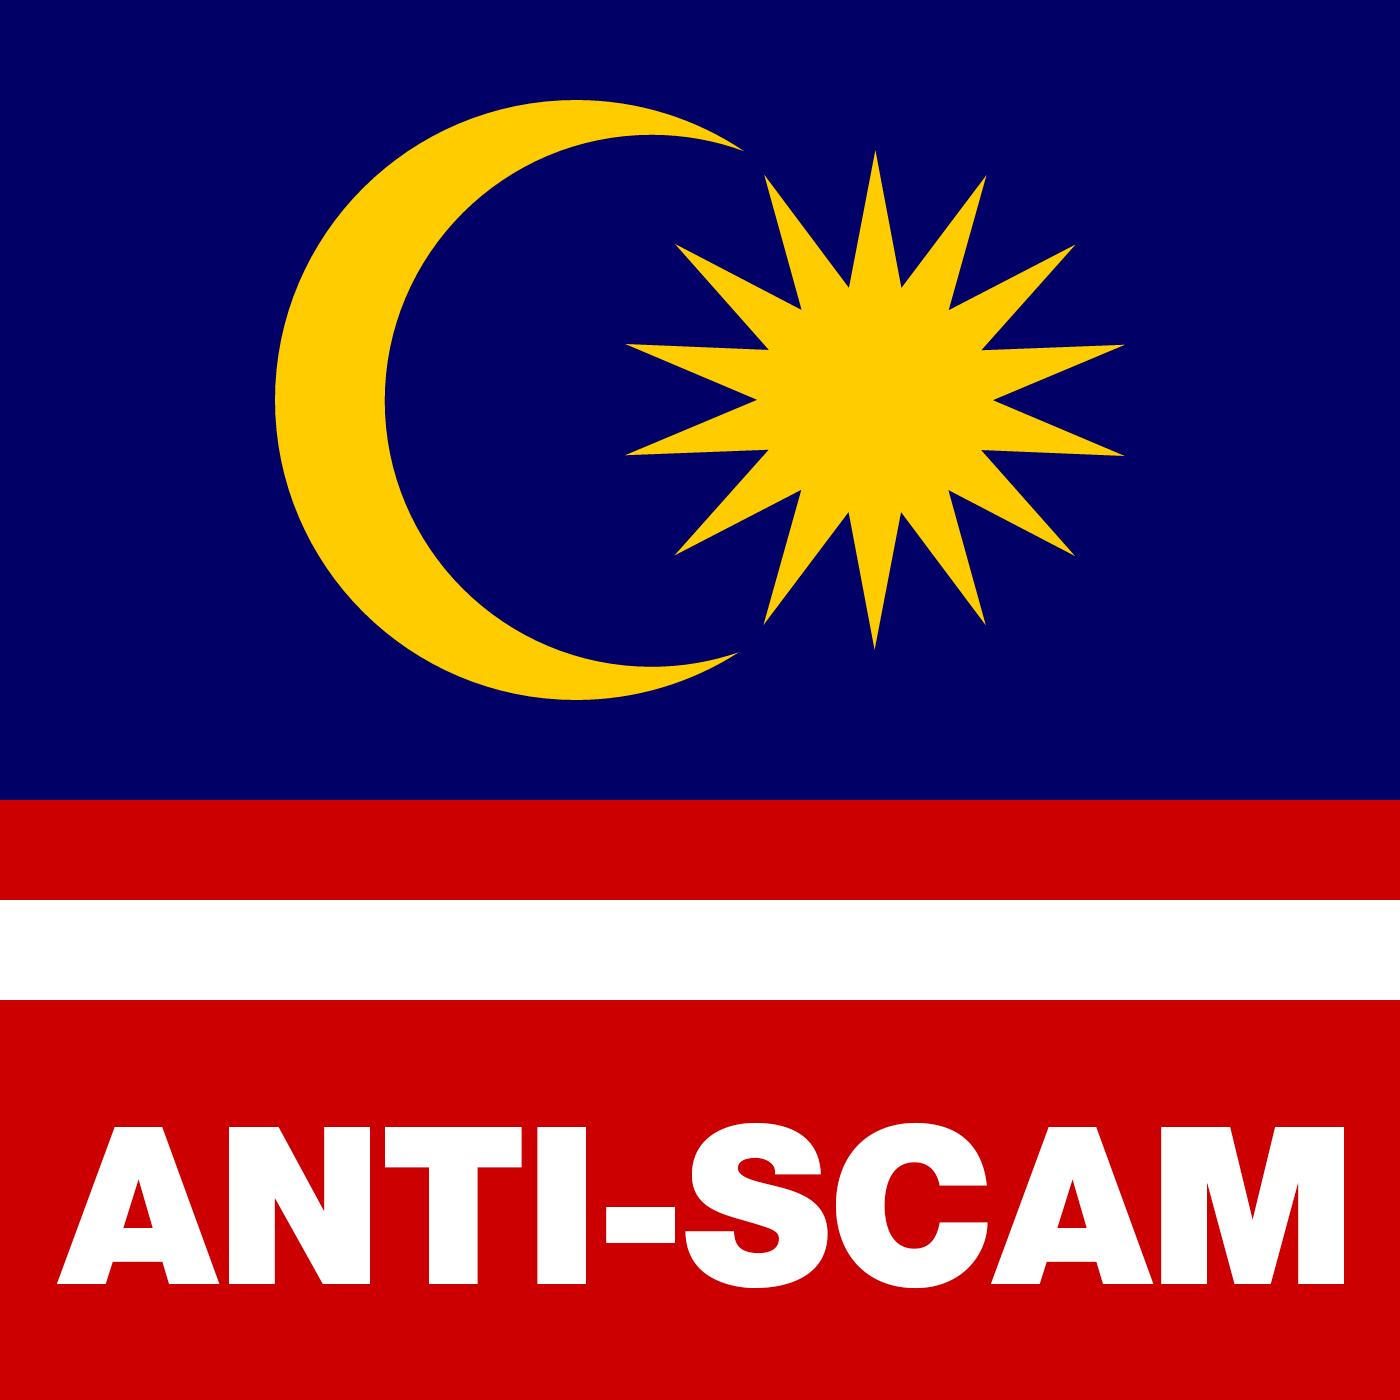 Malaysia Anti-Scam Partnership